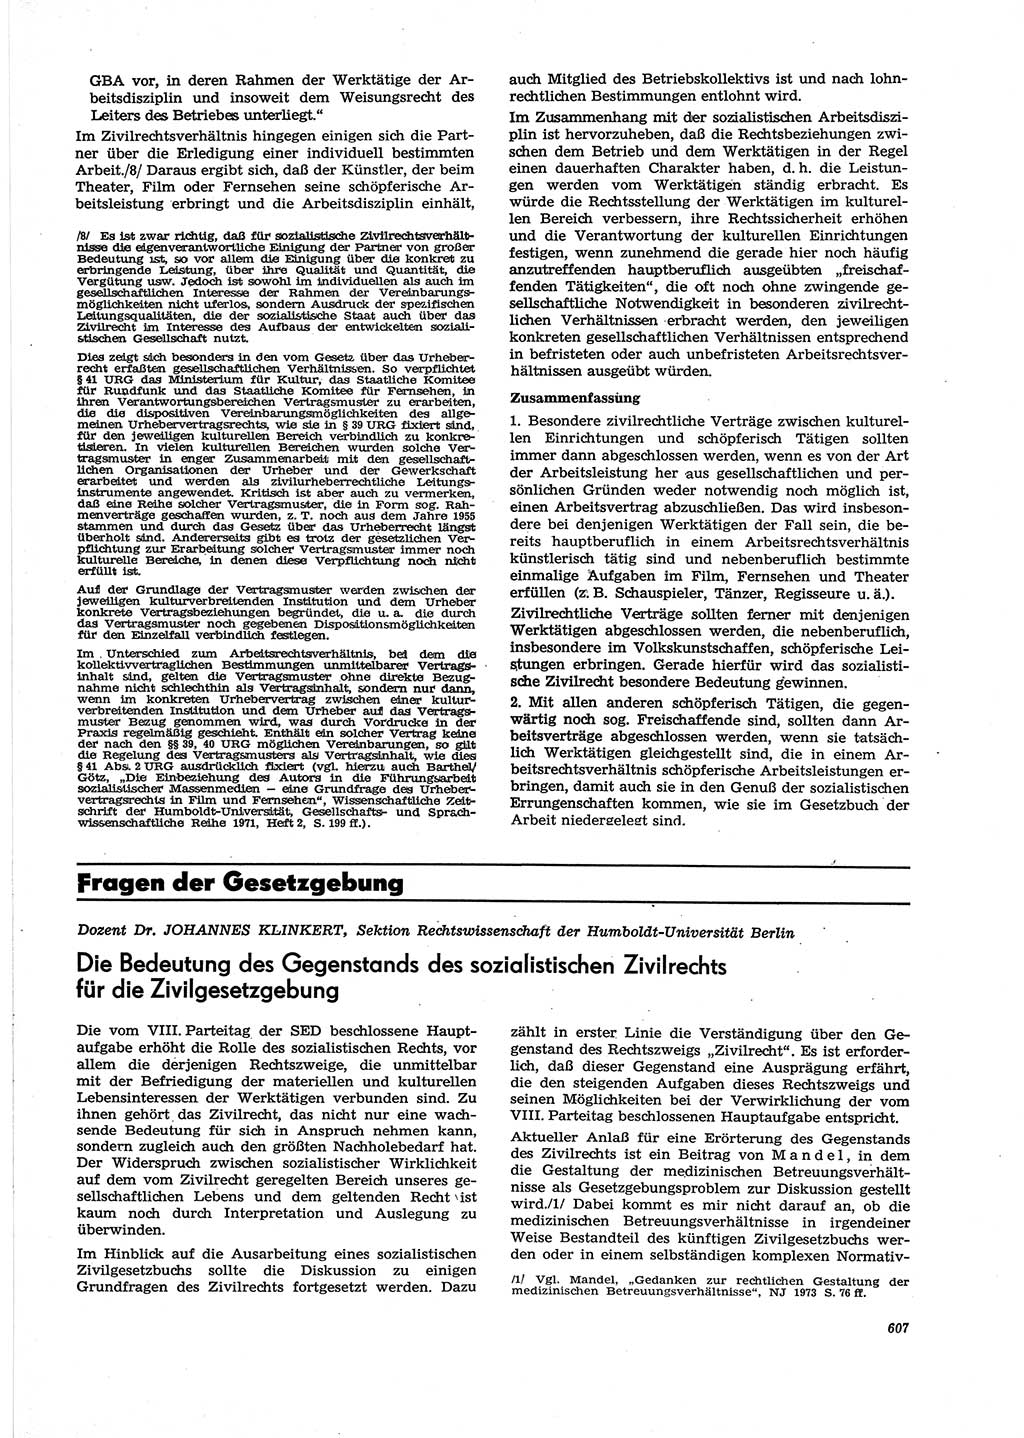 Neue Justiz (NJ), Zeitschrift für Recht und Rechtswissenschaft [Deutsche Demokratische Republik (DDR)], 27. Jahrgang 1973, Seite 607 (NJ DDR 1973, S. 607)